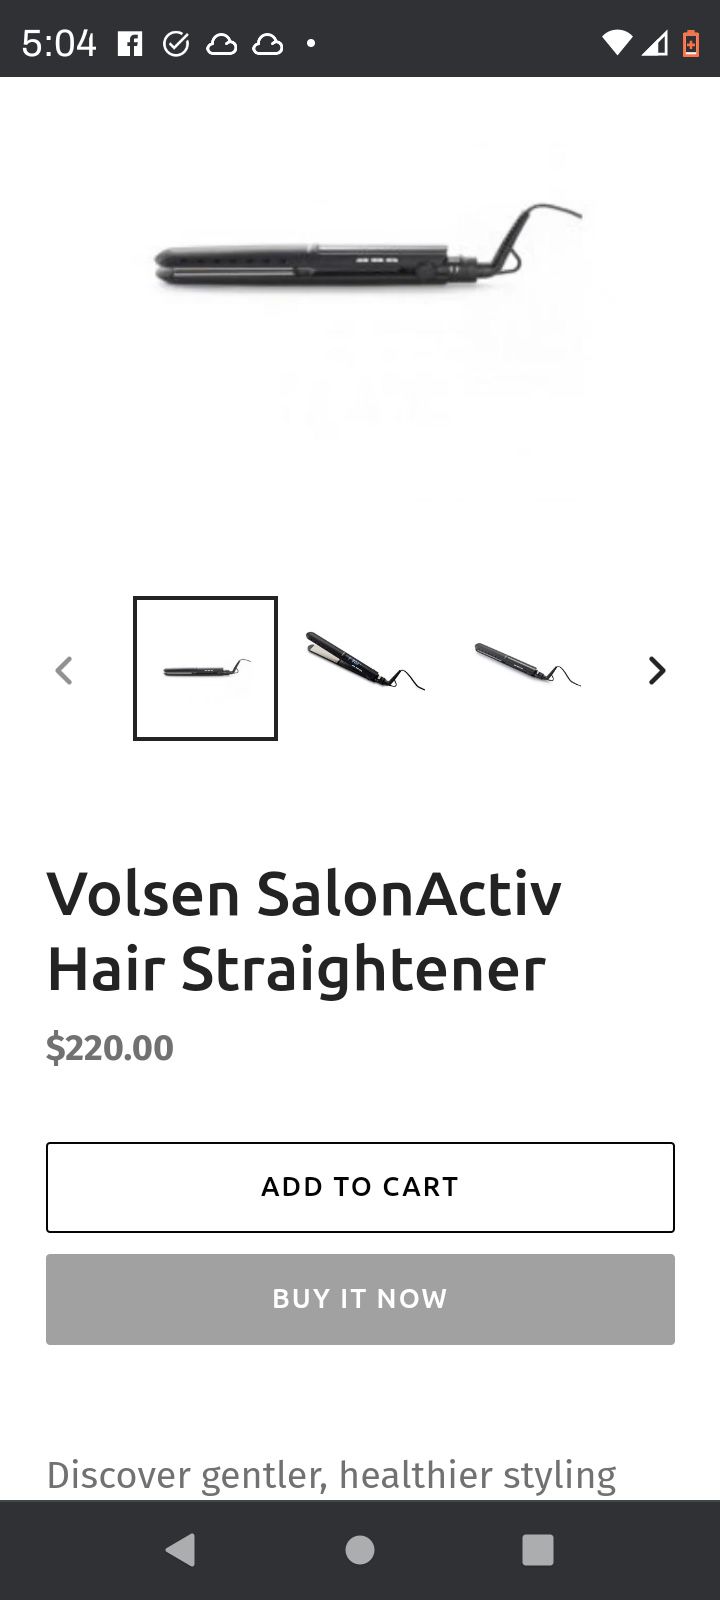 Volsen SalonActiv Hair Straightener